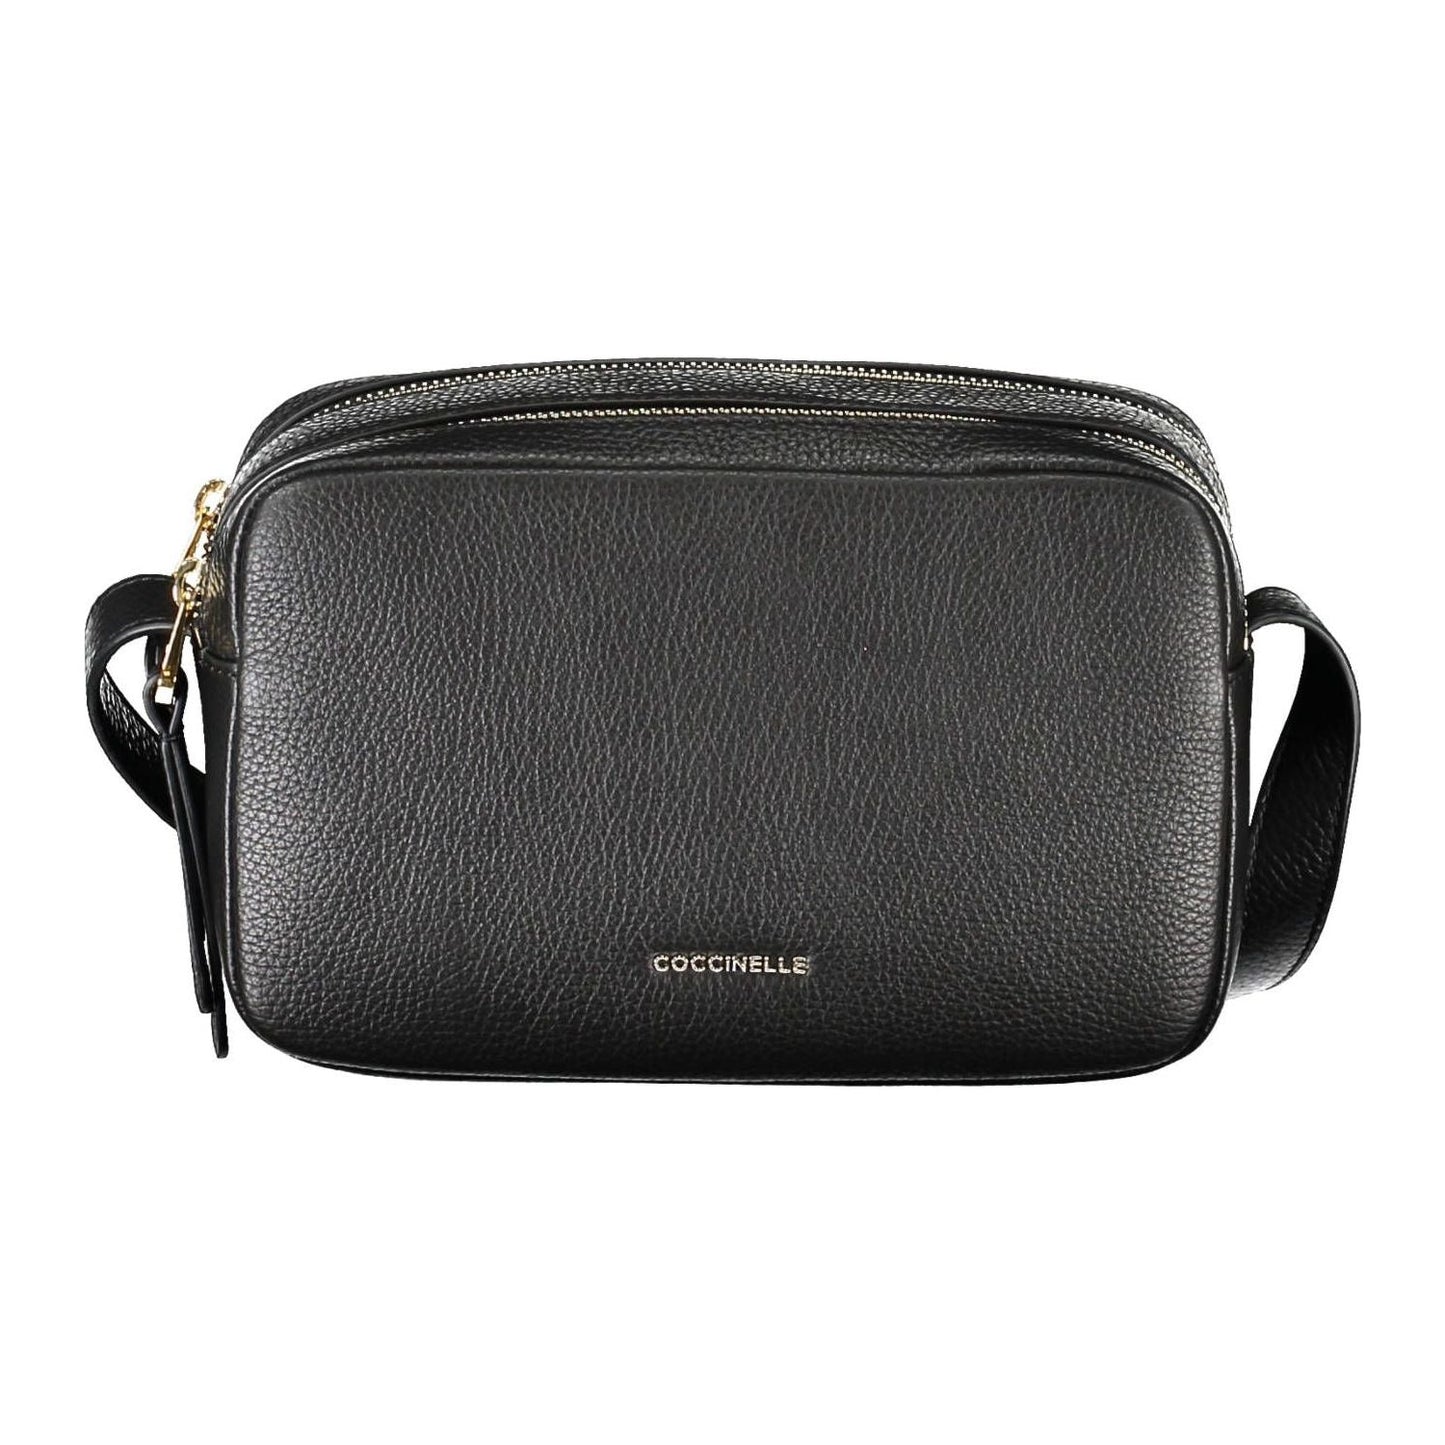 CoccinelleElegant Black Leather Shoulder Bag with LogoMcRichard Designer Brands£259.00